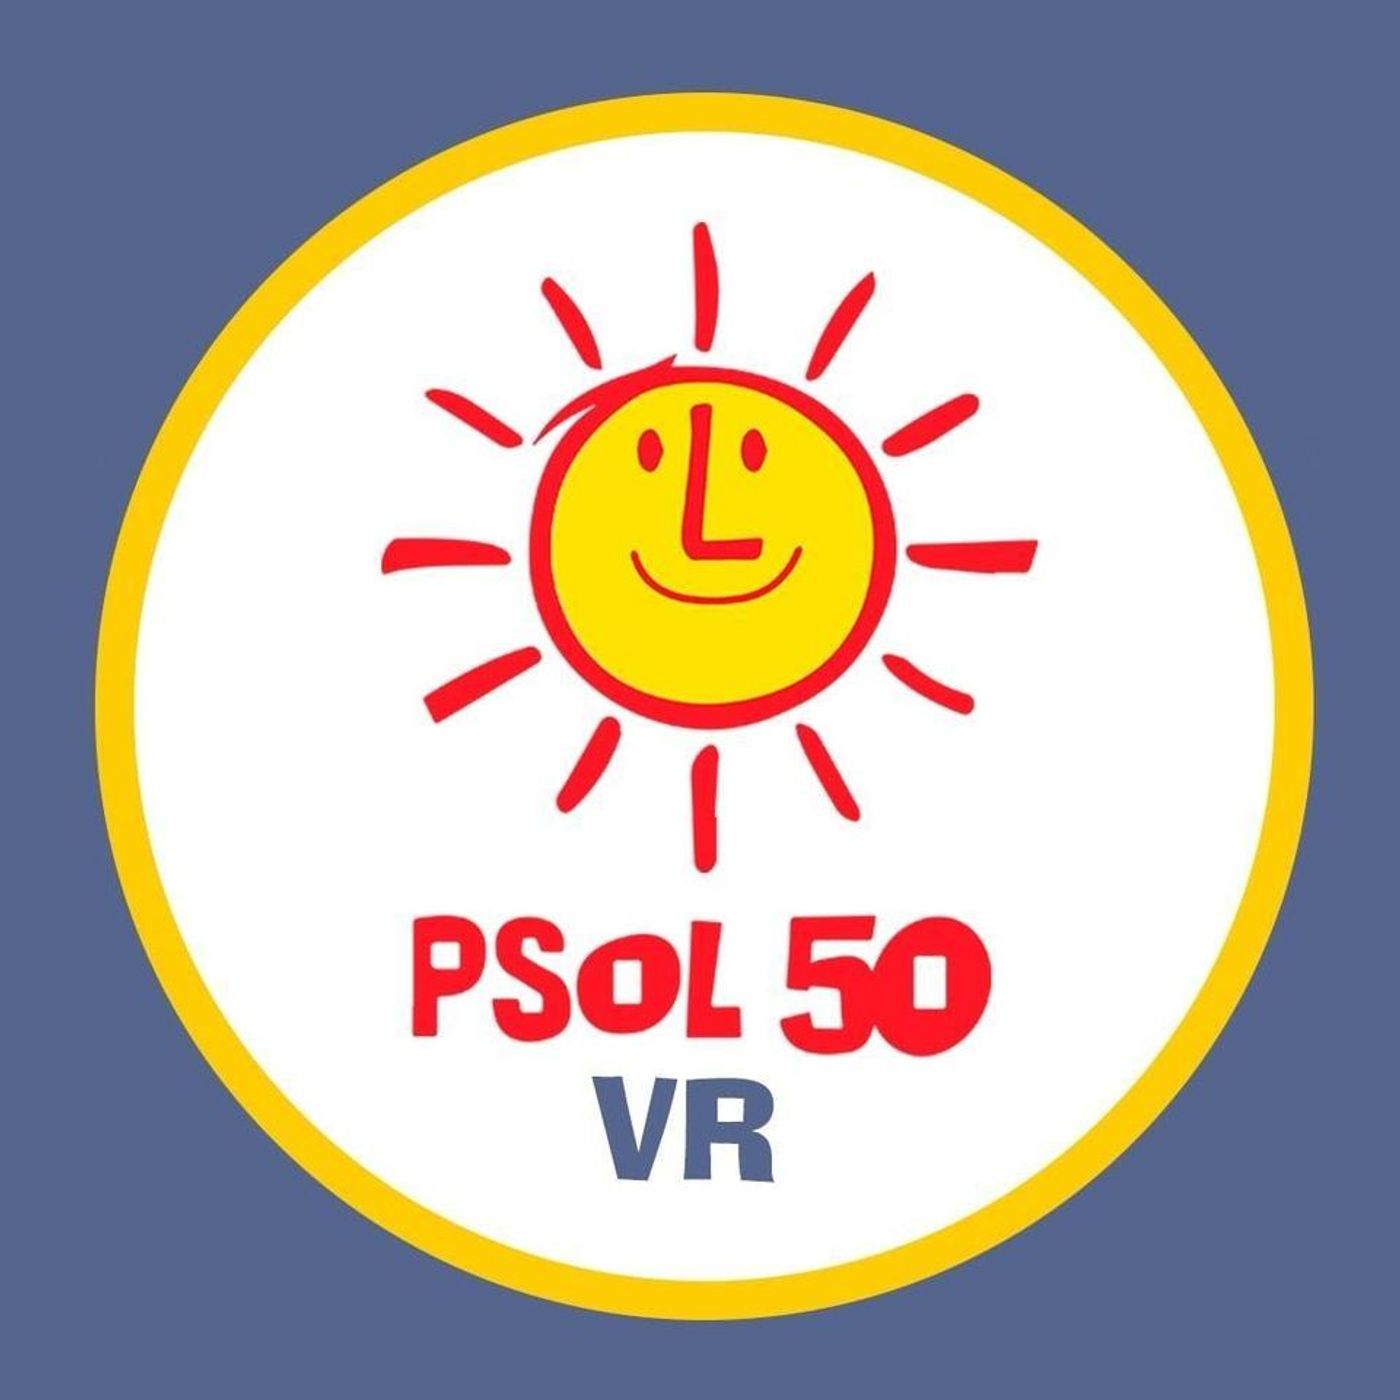 Propostas do PSOL-VR para as eleições 2020 (PARTE 1)